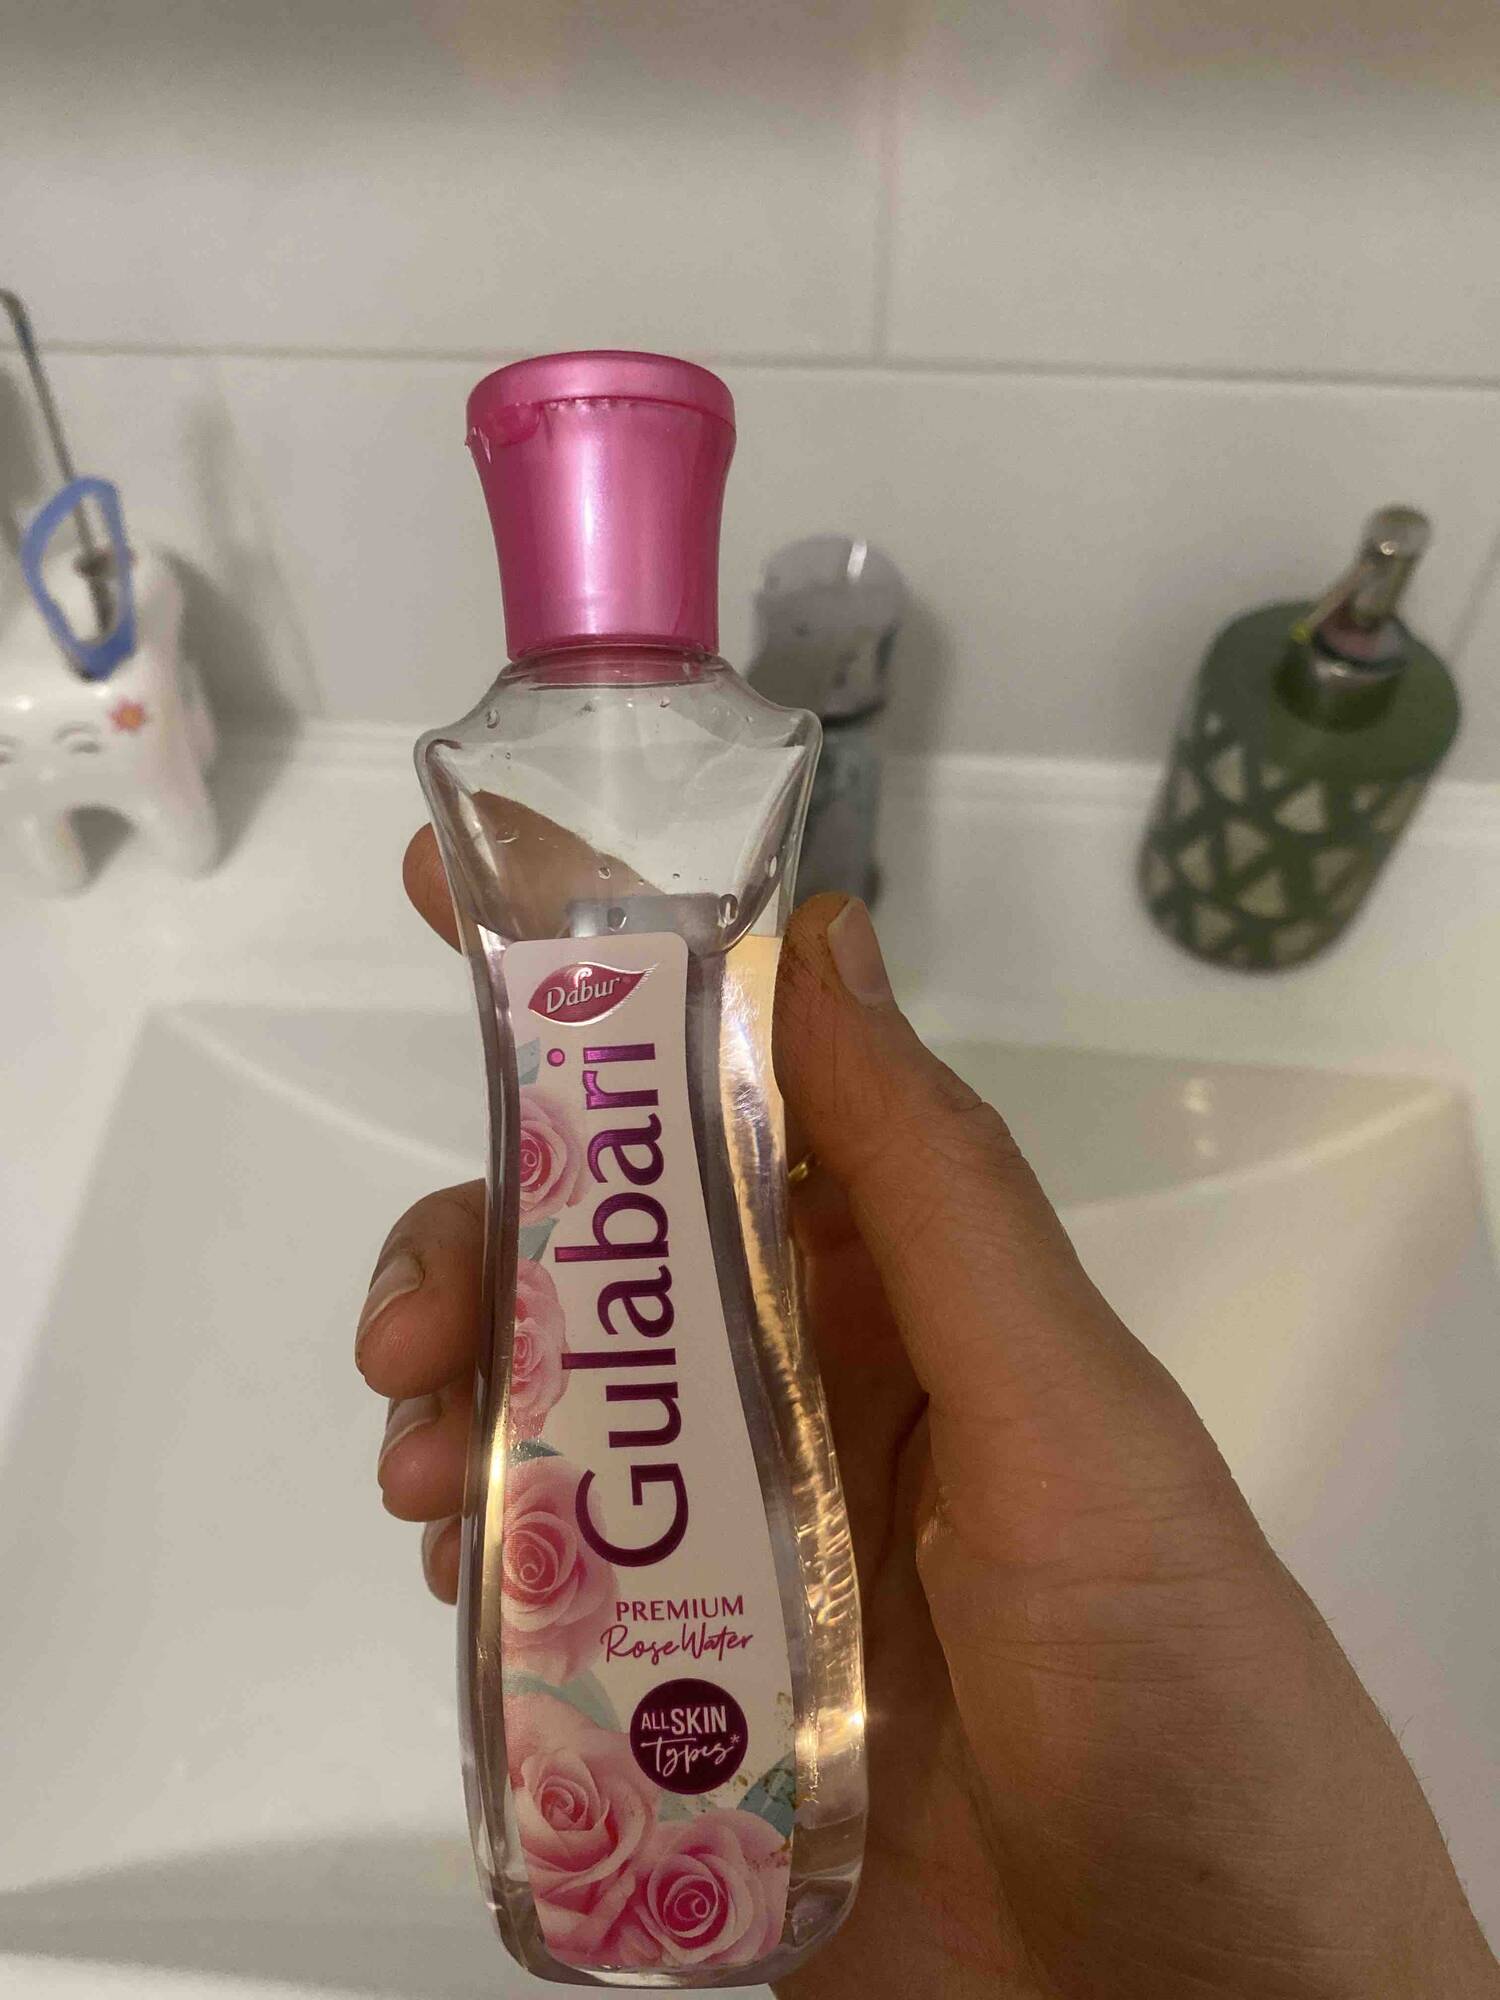 DABUR - Gulabari - Premium rose water